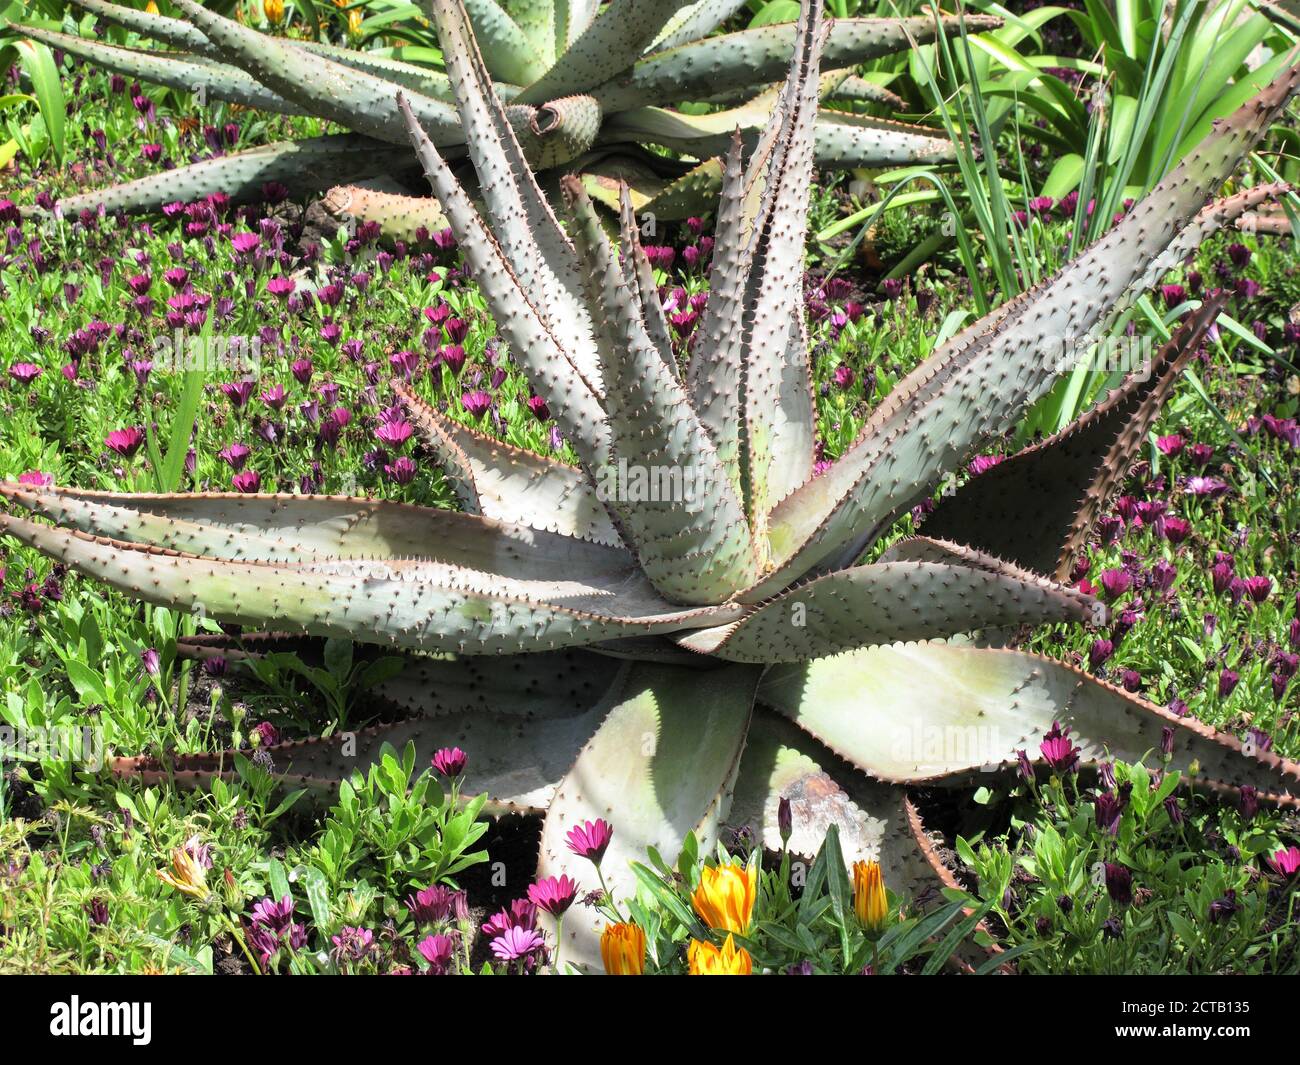 BergAloe (Aloe mellothii) Eine sukkulente südafrikanische Pflanze in der Medizin für den Magen verwendet Upsets und von Zulus für Fadenwurm-Infektion Stock Foto im Stockfoto